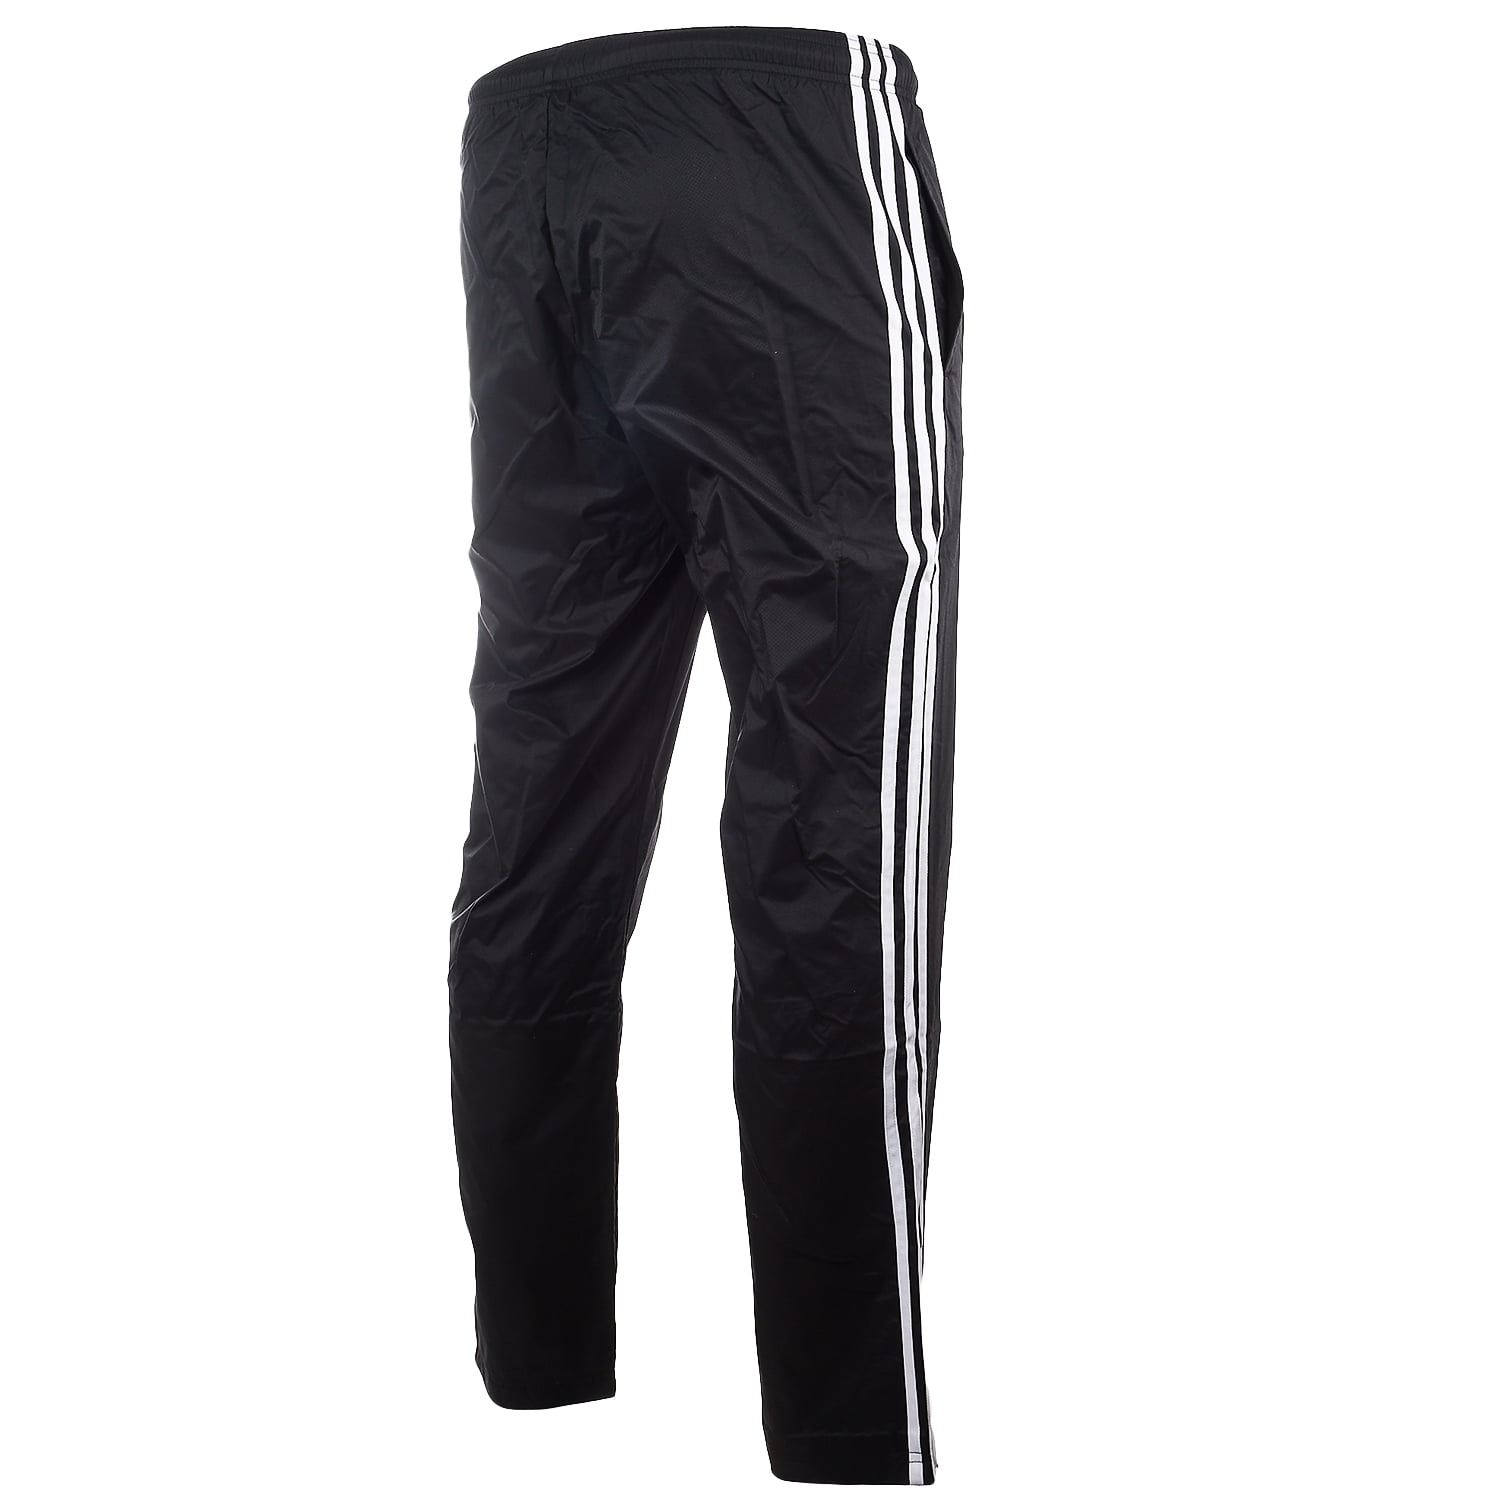 Adidas Signature 3 Stripe Wind Pants - Size XS